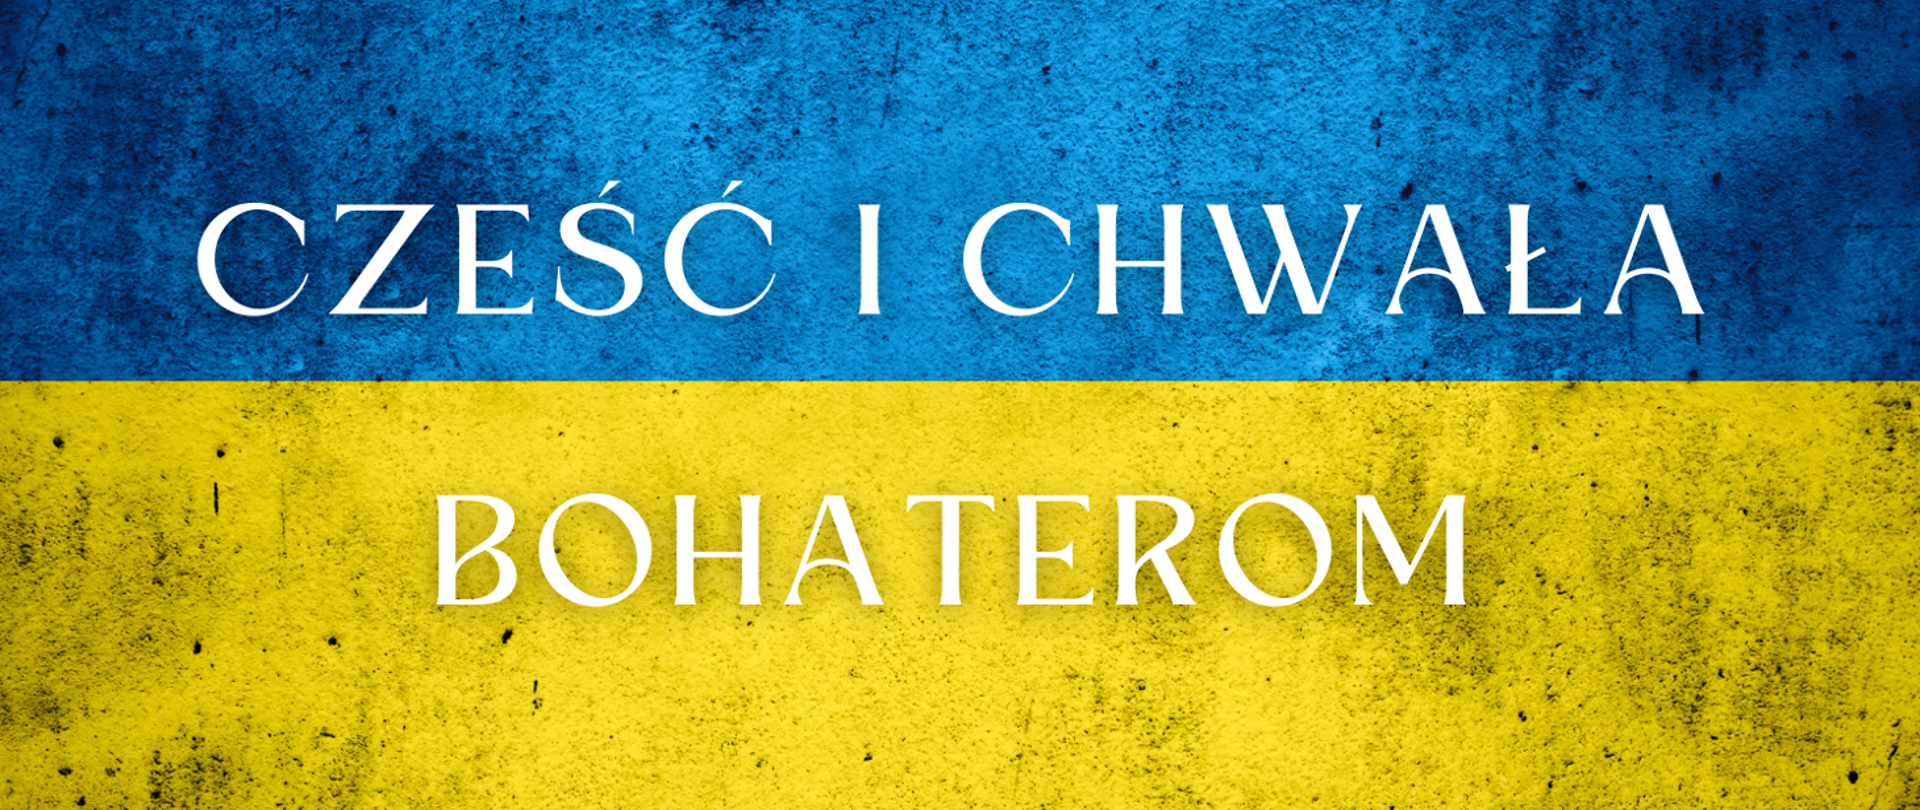 Cześć i chwała bohaterom Ukrainy - baner